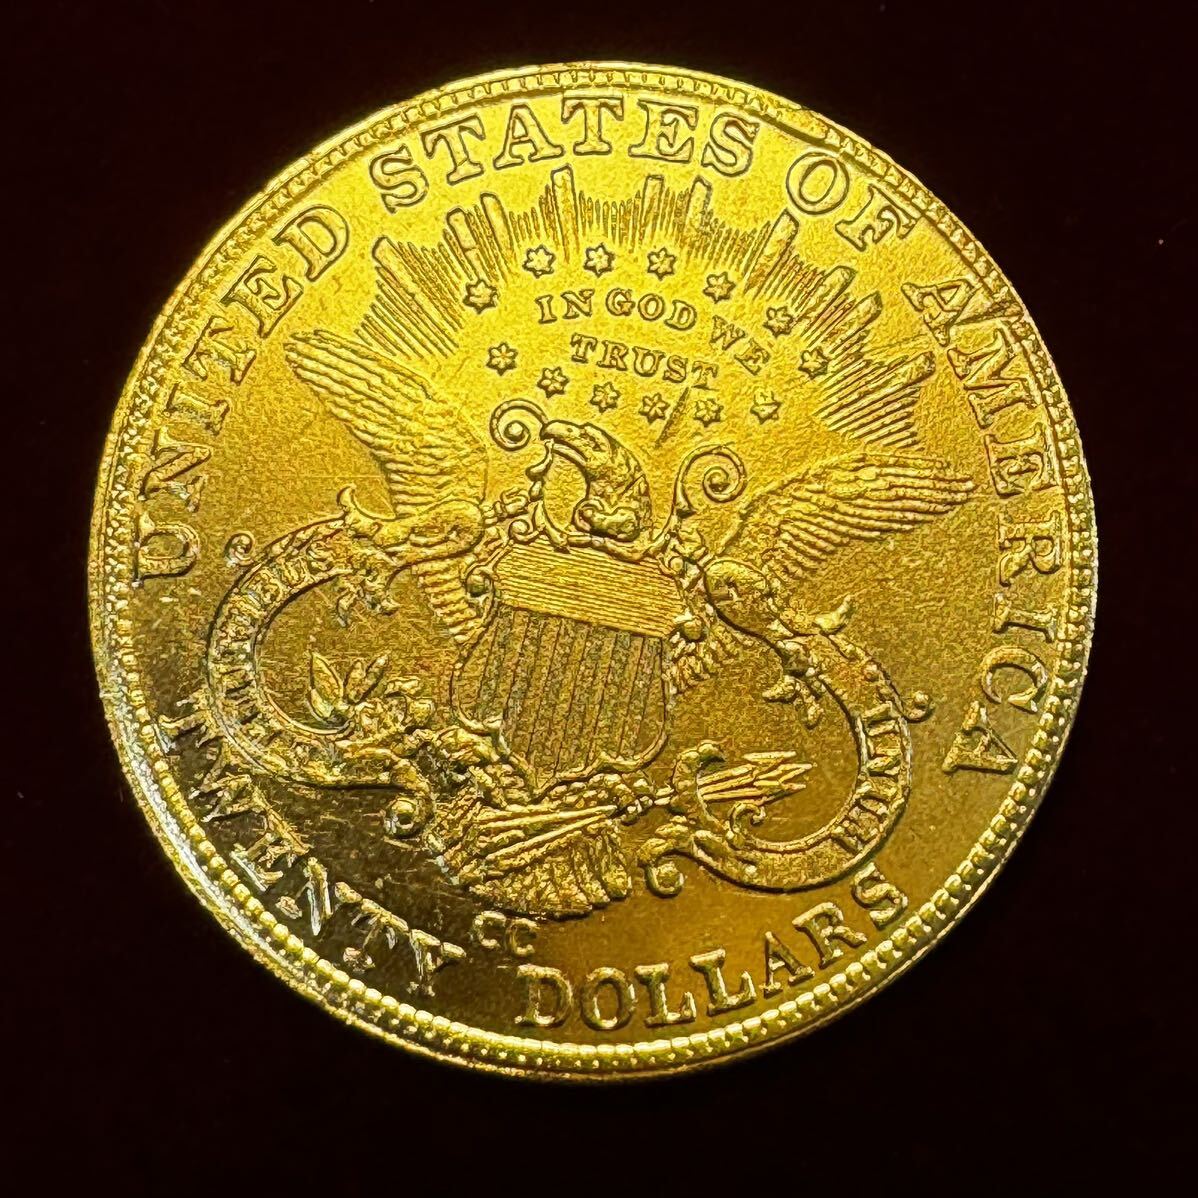 アメリカ 硬貨 古銭 自由の女神 1885年 ハクトウワシ 13の星 独立十三州 盾 オリーブの枝 コイン 金貨 外国古銭 海外硬貨 _画像2